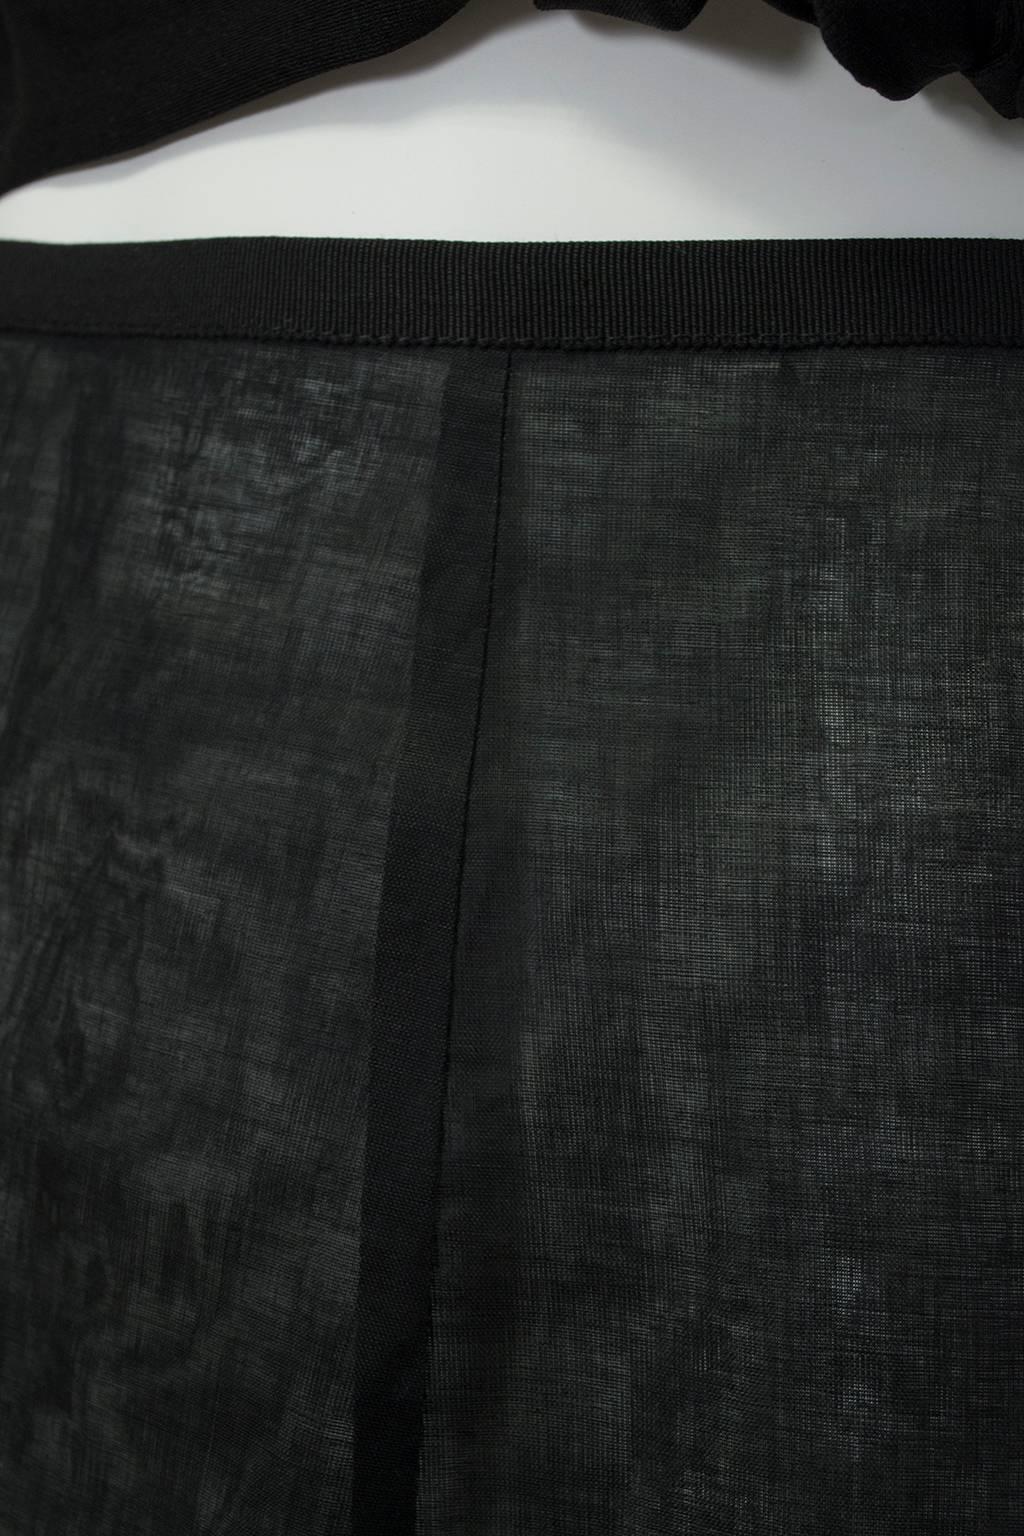 New Jacques Fath Paris Sheer Black Demi-Couture Linen Lingerie Skirt - M, 1990s For Sale 2